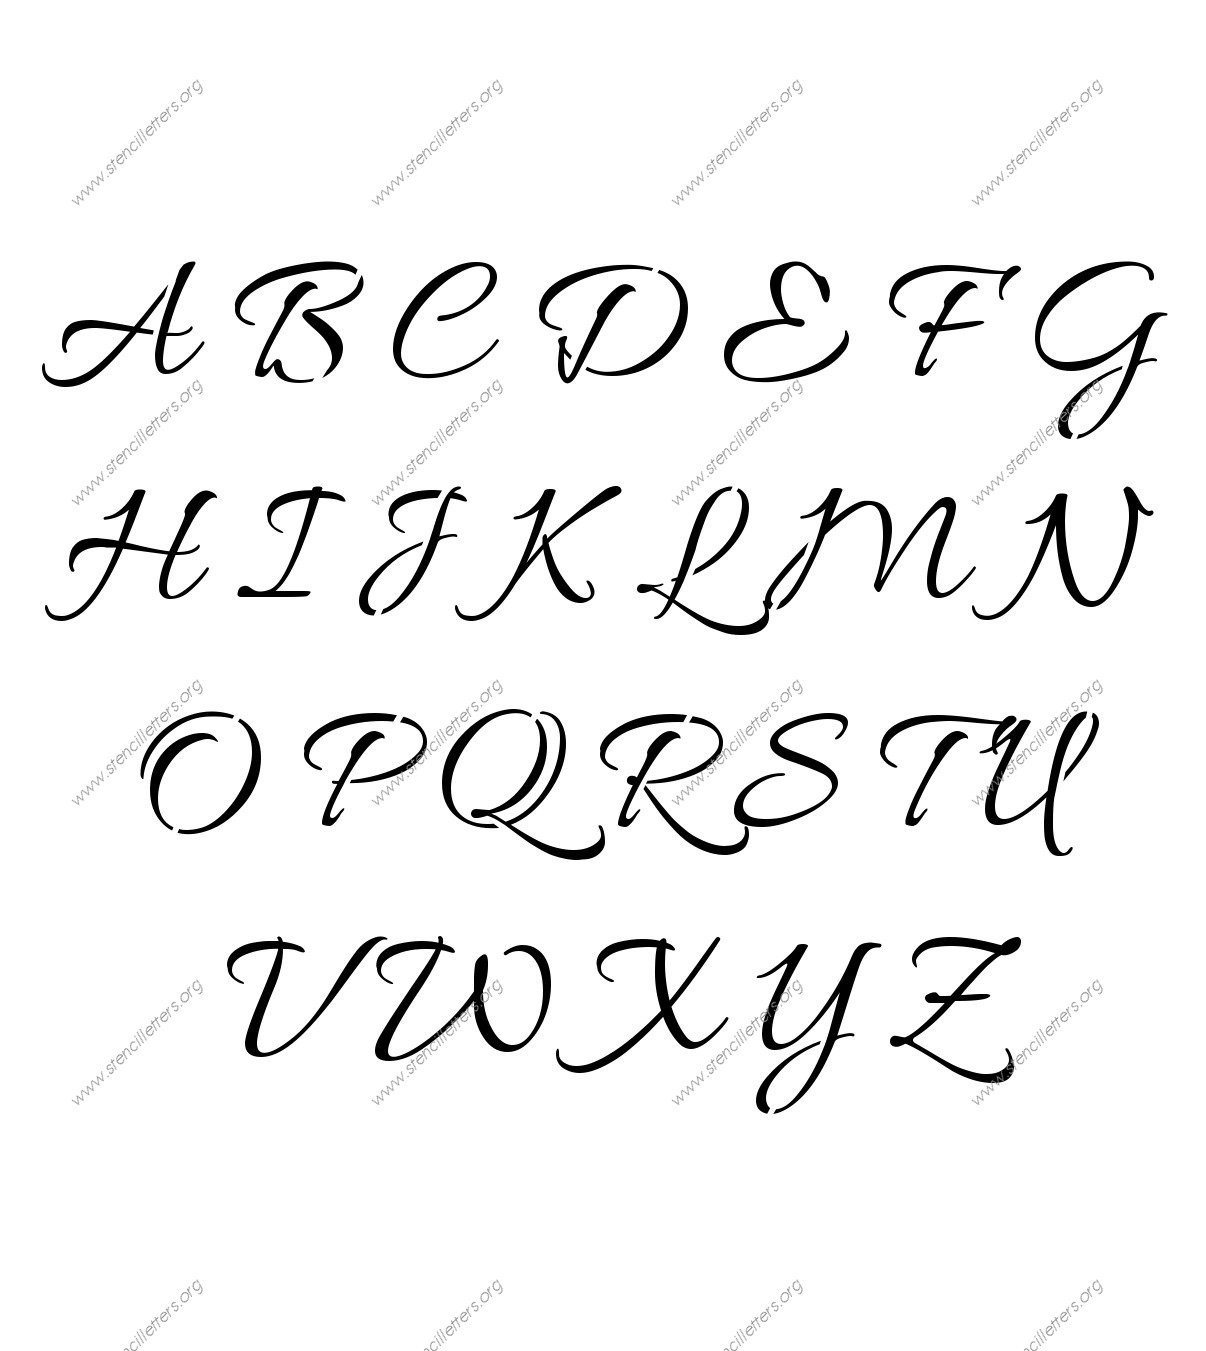 Connected Cursive A to Z alphabet stencils